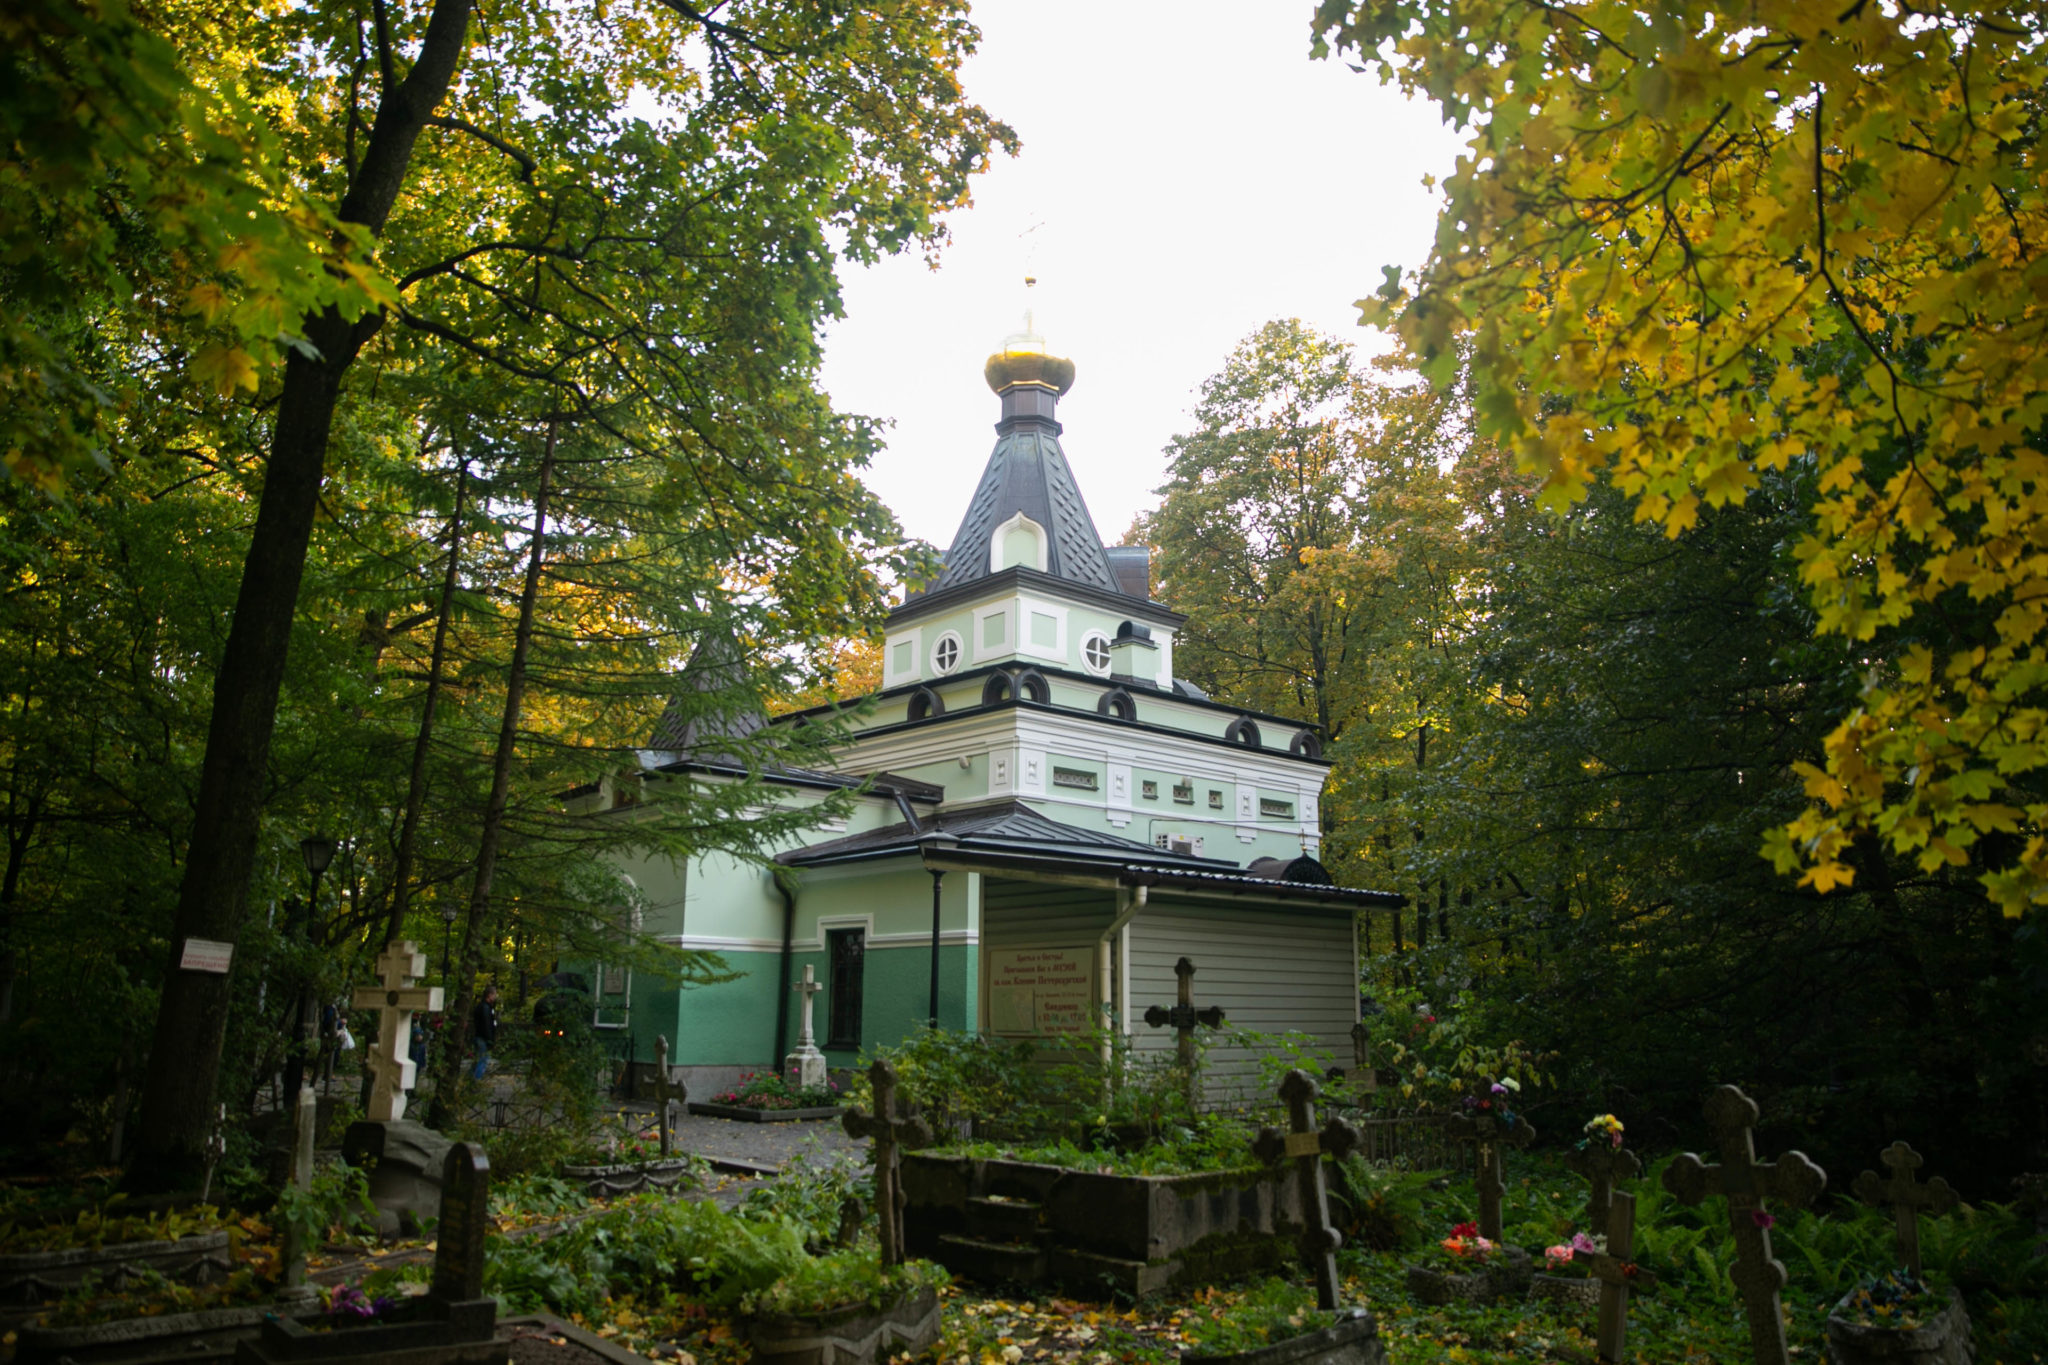 ксения петербургская смоленское кладбище фото